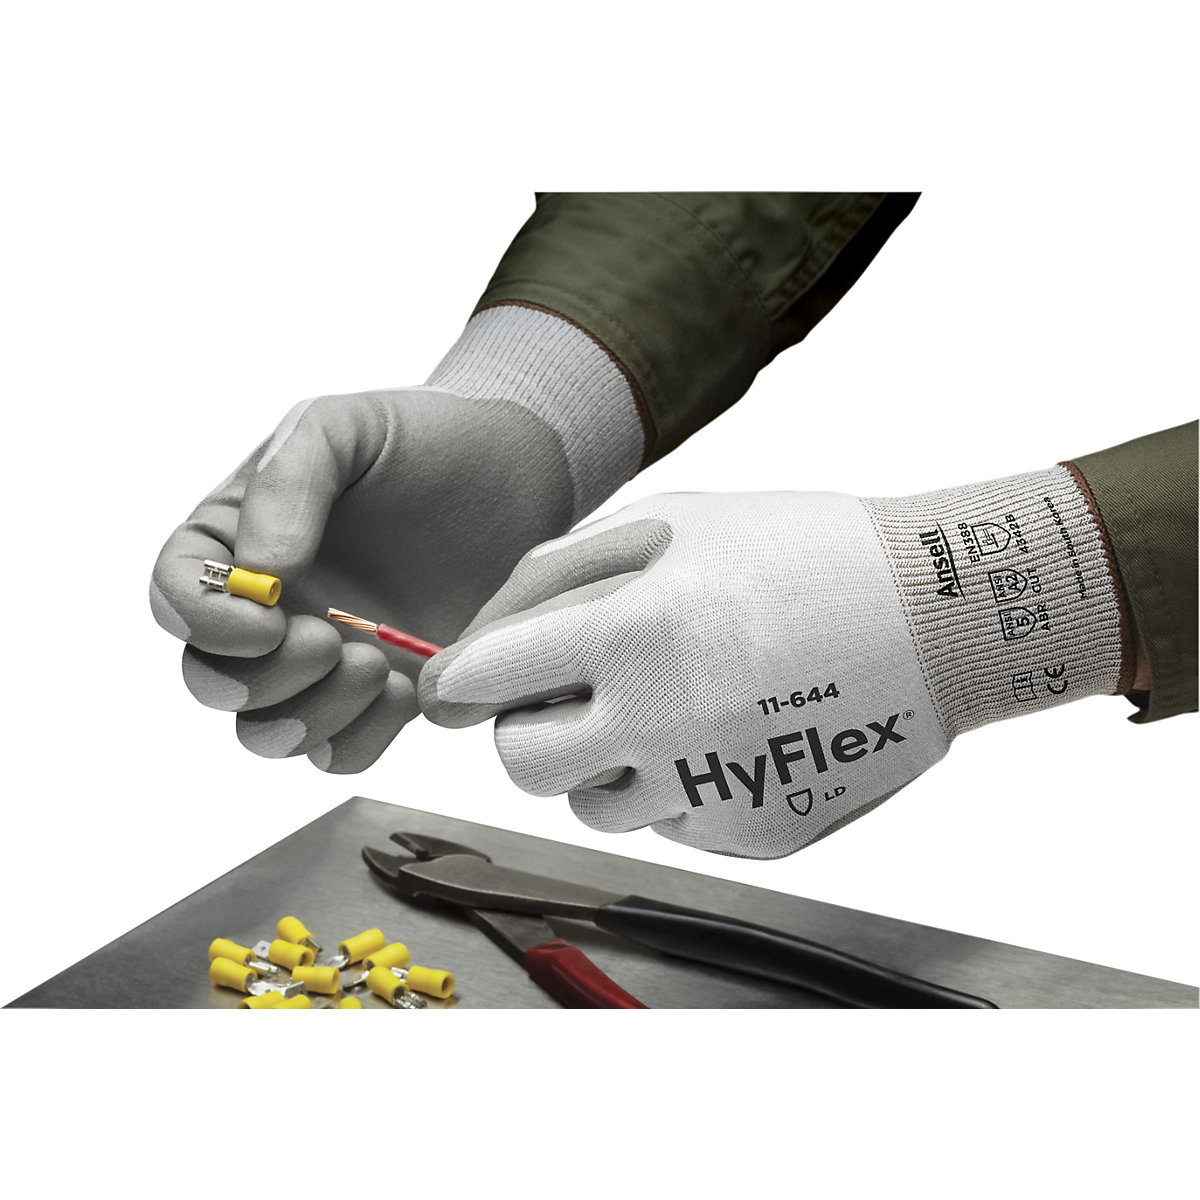 Mănușă de lucru HyFlex® 11-644 – Ansell (Imagine produs 5)-4